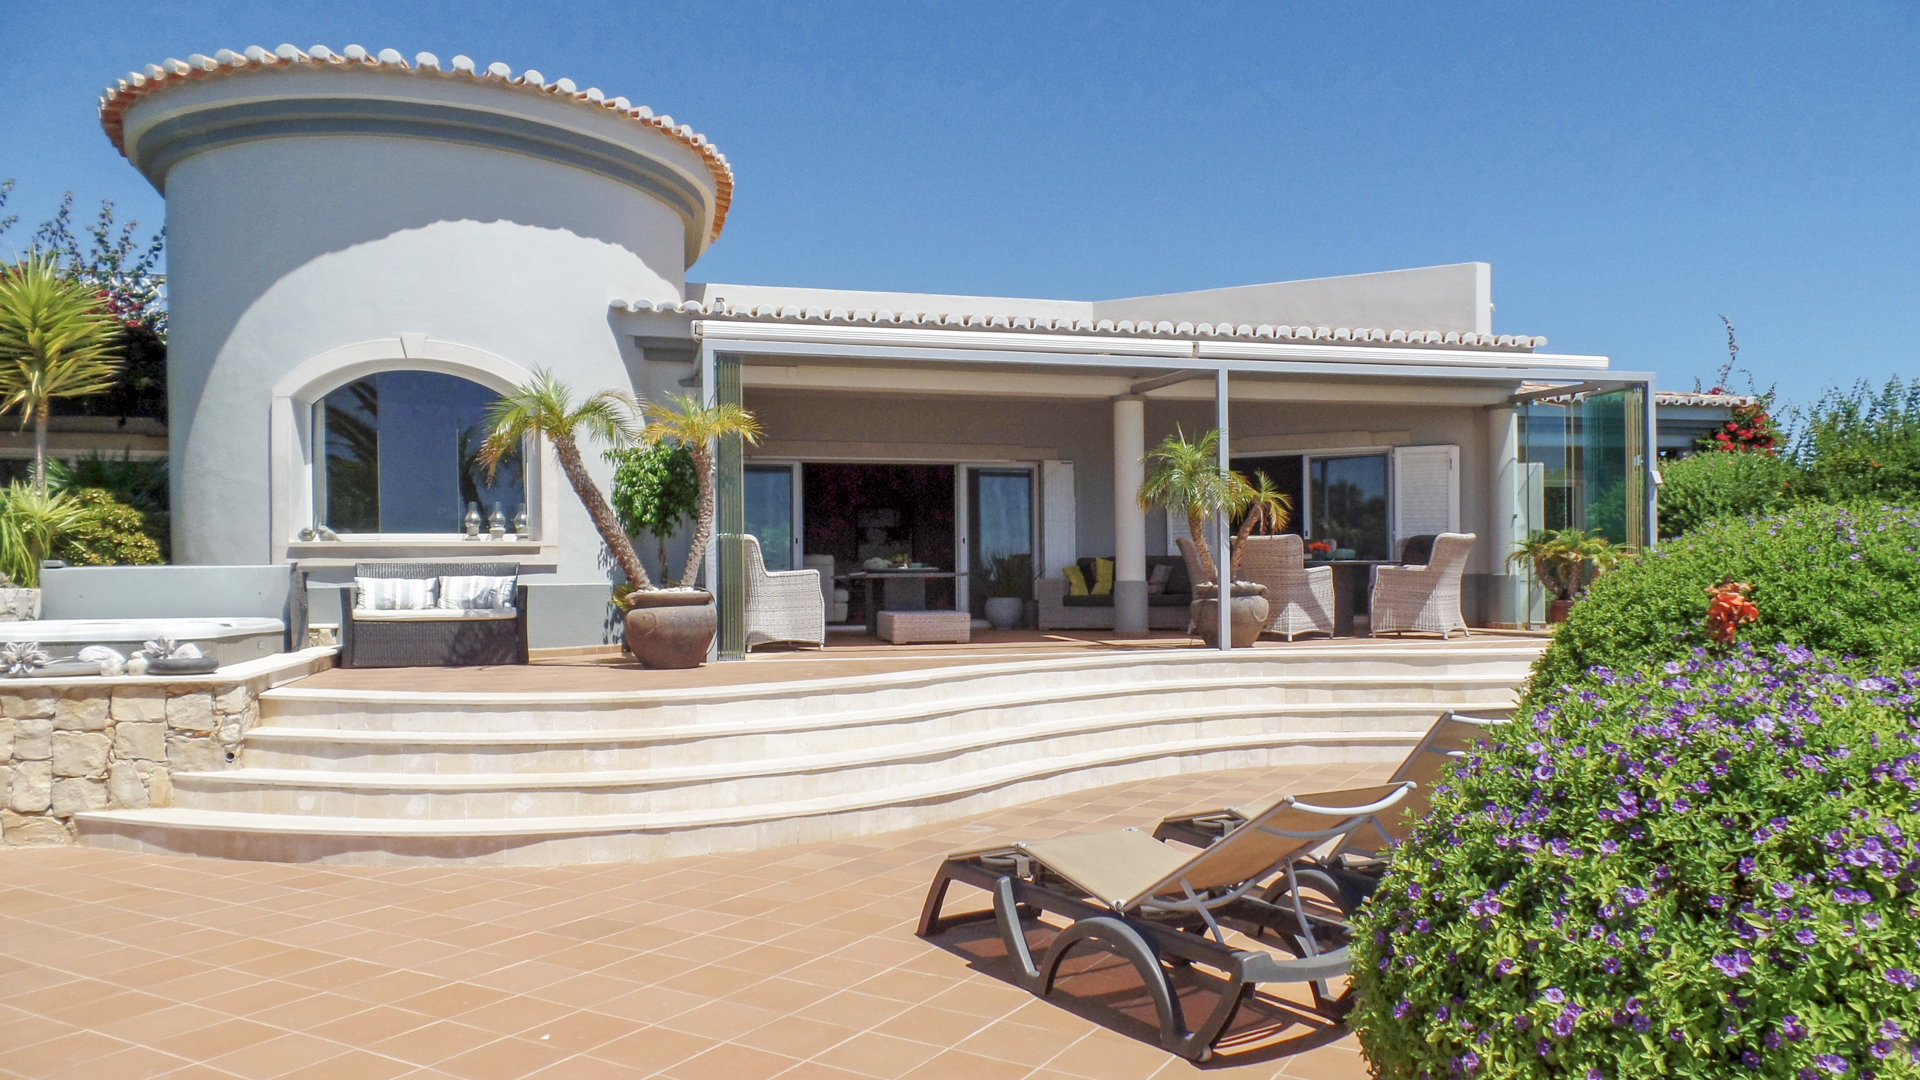 Luxuriöse 4 SZ Villa mit herrlichem Meerblick, Nahe Carvoeiro | S2494 Wundervoll in einer repräsentativen Wohngegend, nahe den schönsten Stränden der Algarve gelegen, bietet diese Villa einen atemberaubenden Meerblick von fast jedem Zimmer aus.